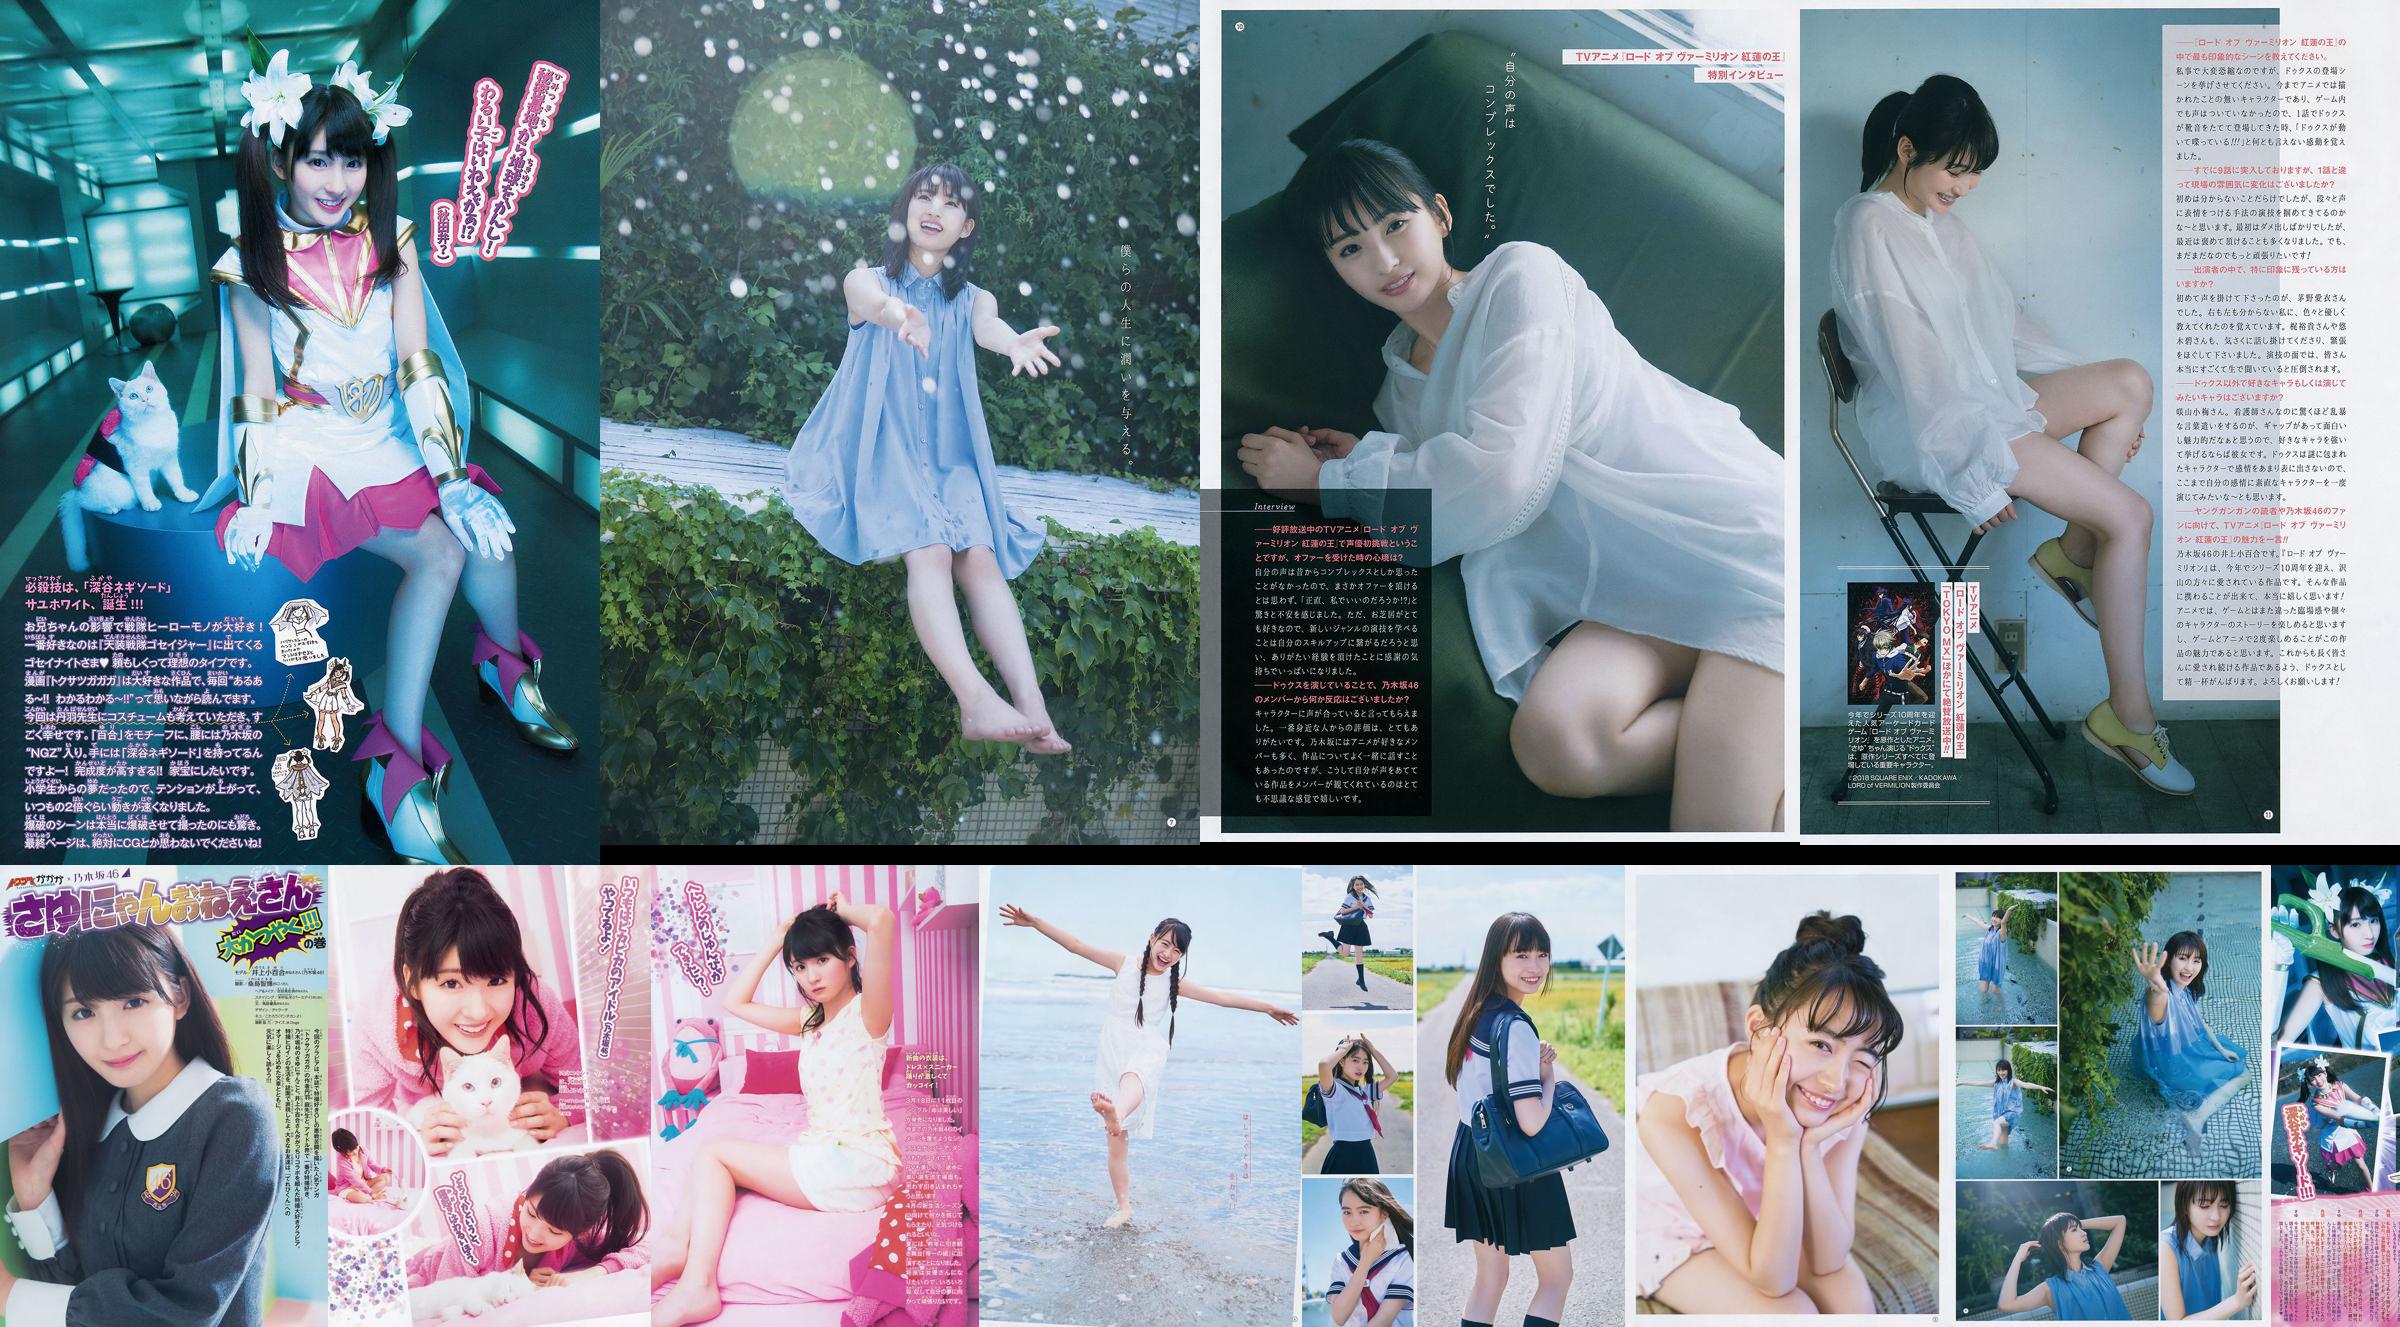 [Young Gangan] Sayuri Inoue Its original sand 2018 No.18 Photo Magazine No.1fc4e8 Page 3